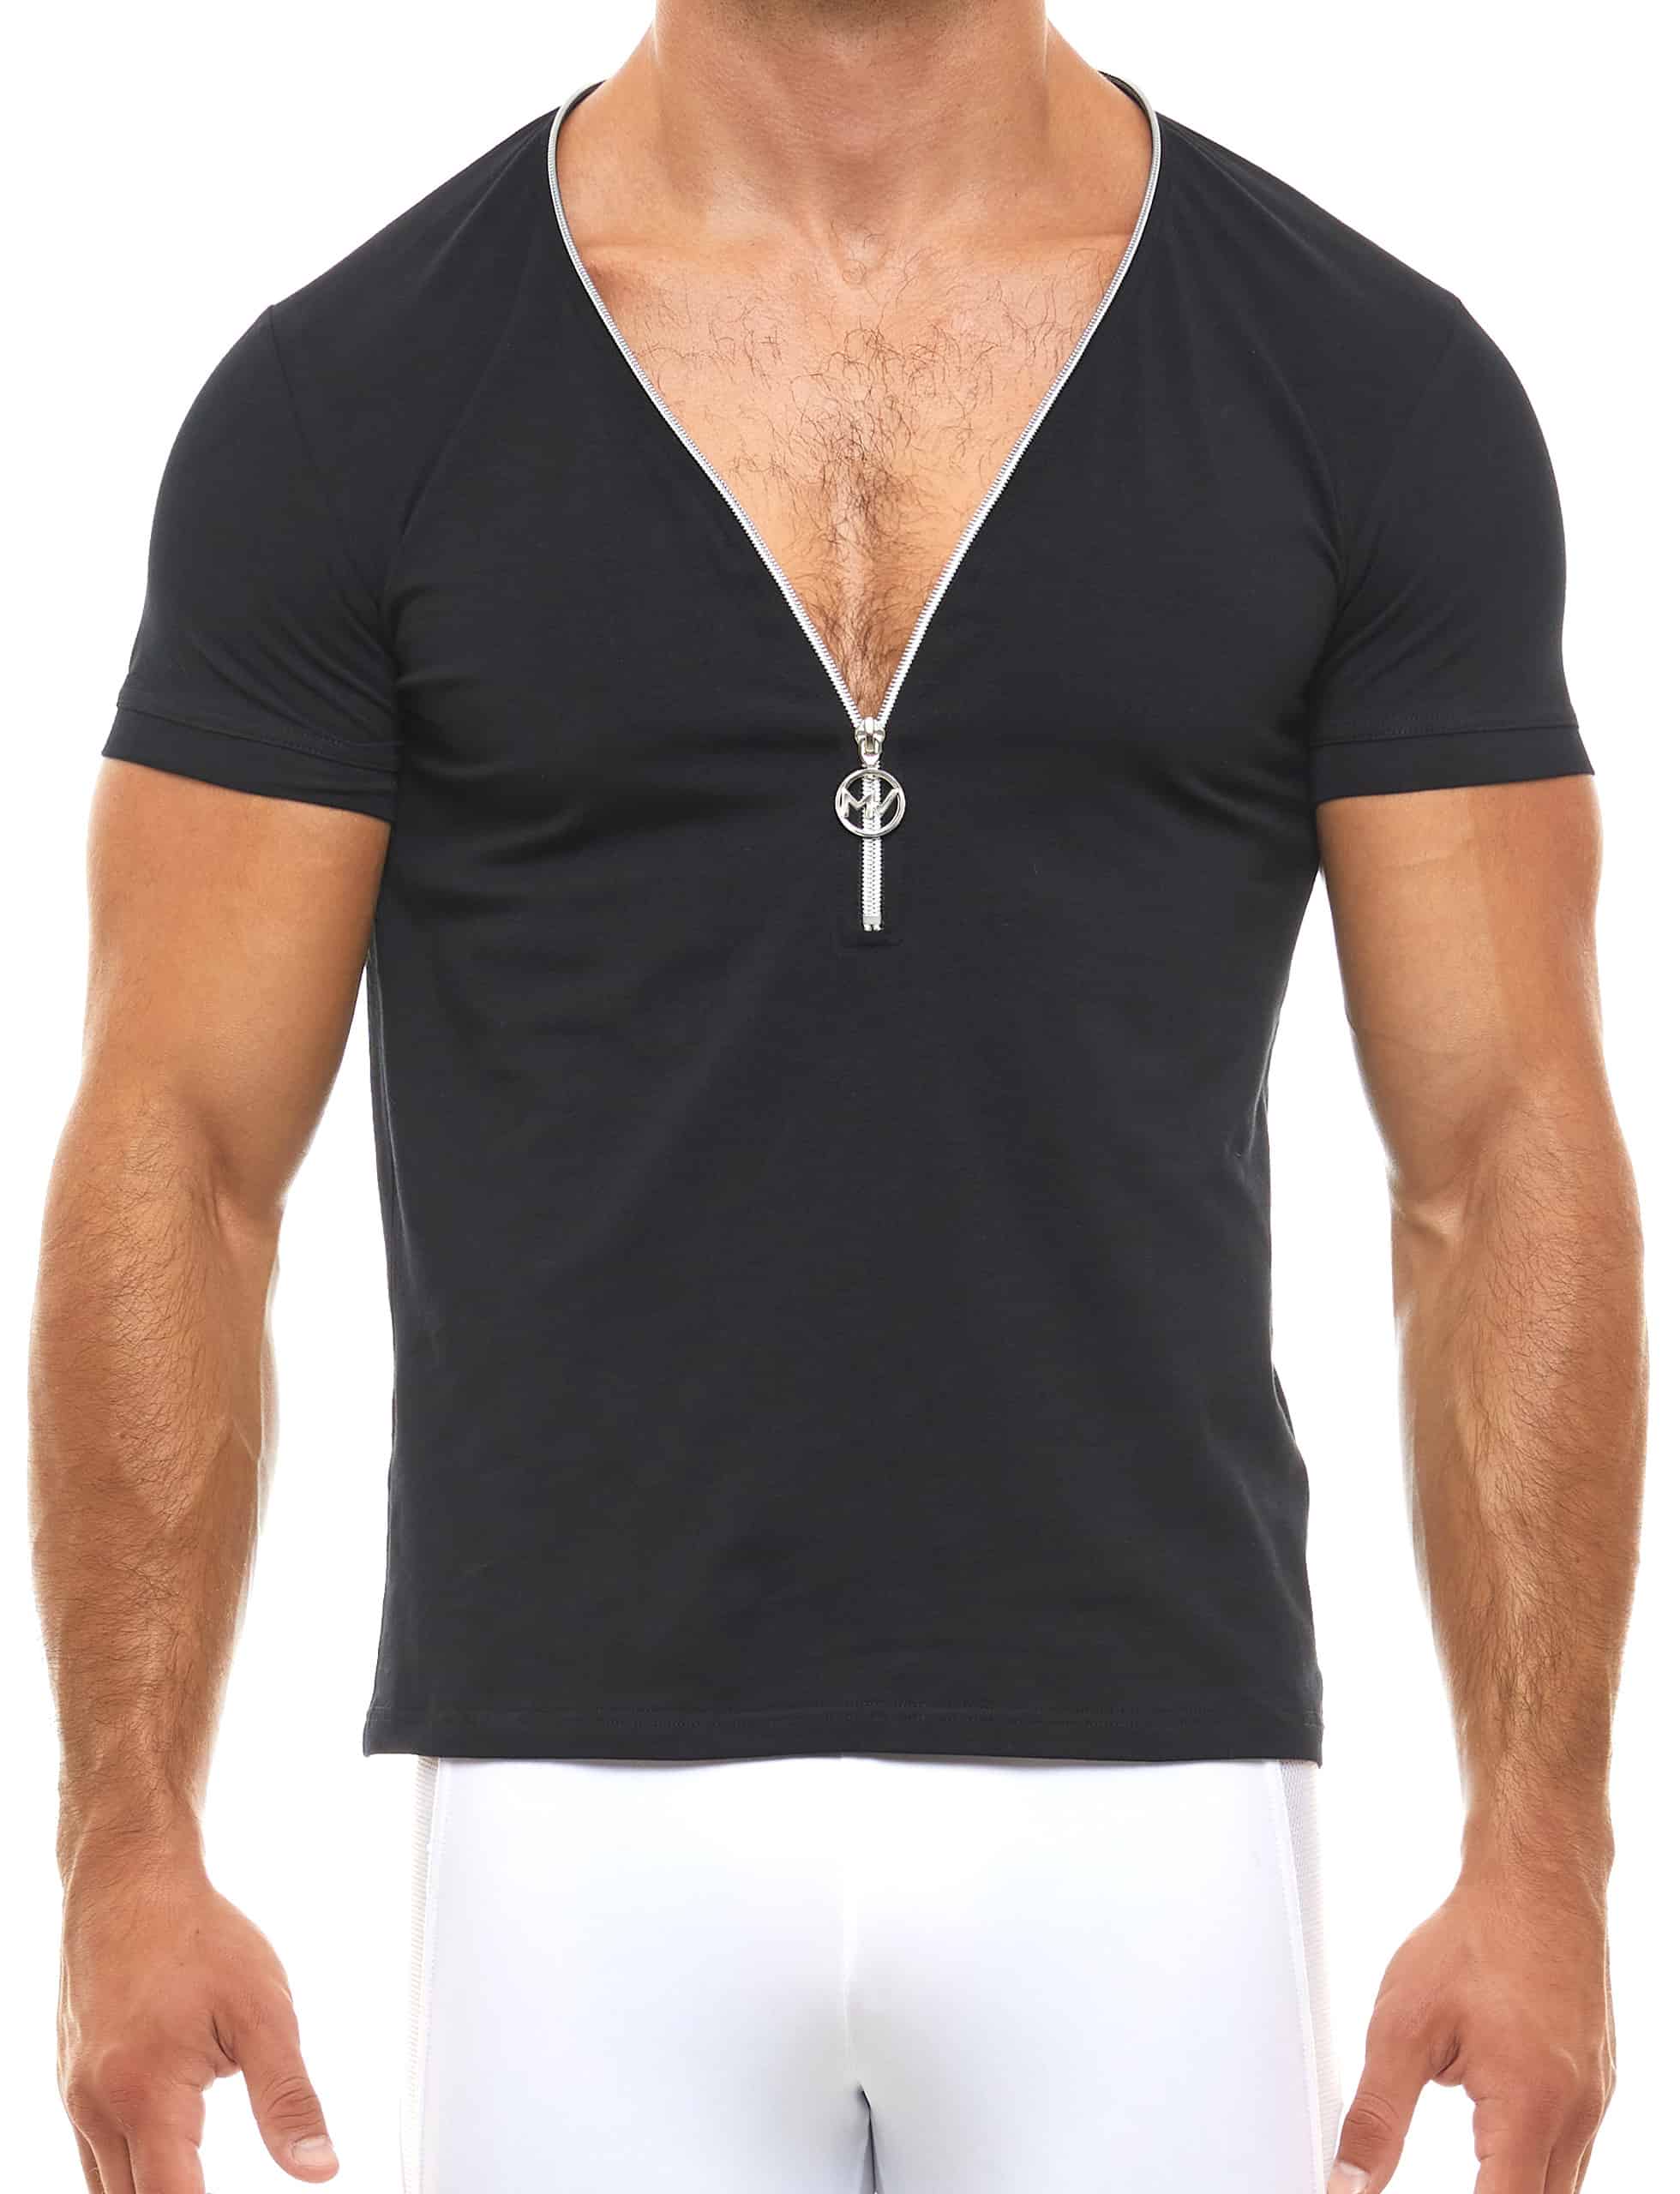 Zipper V-Shirt